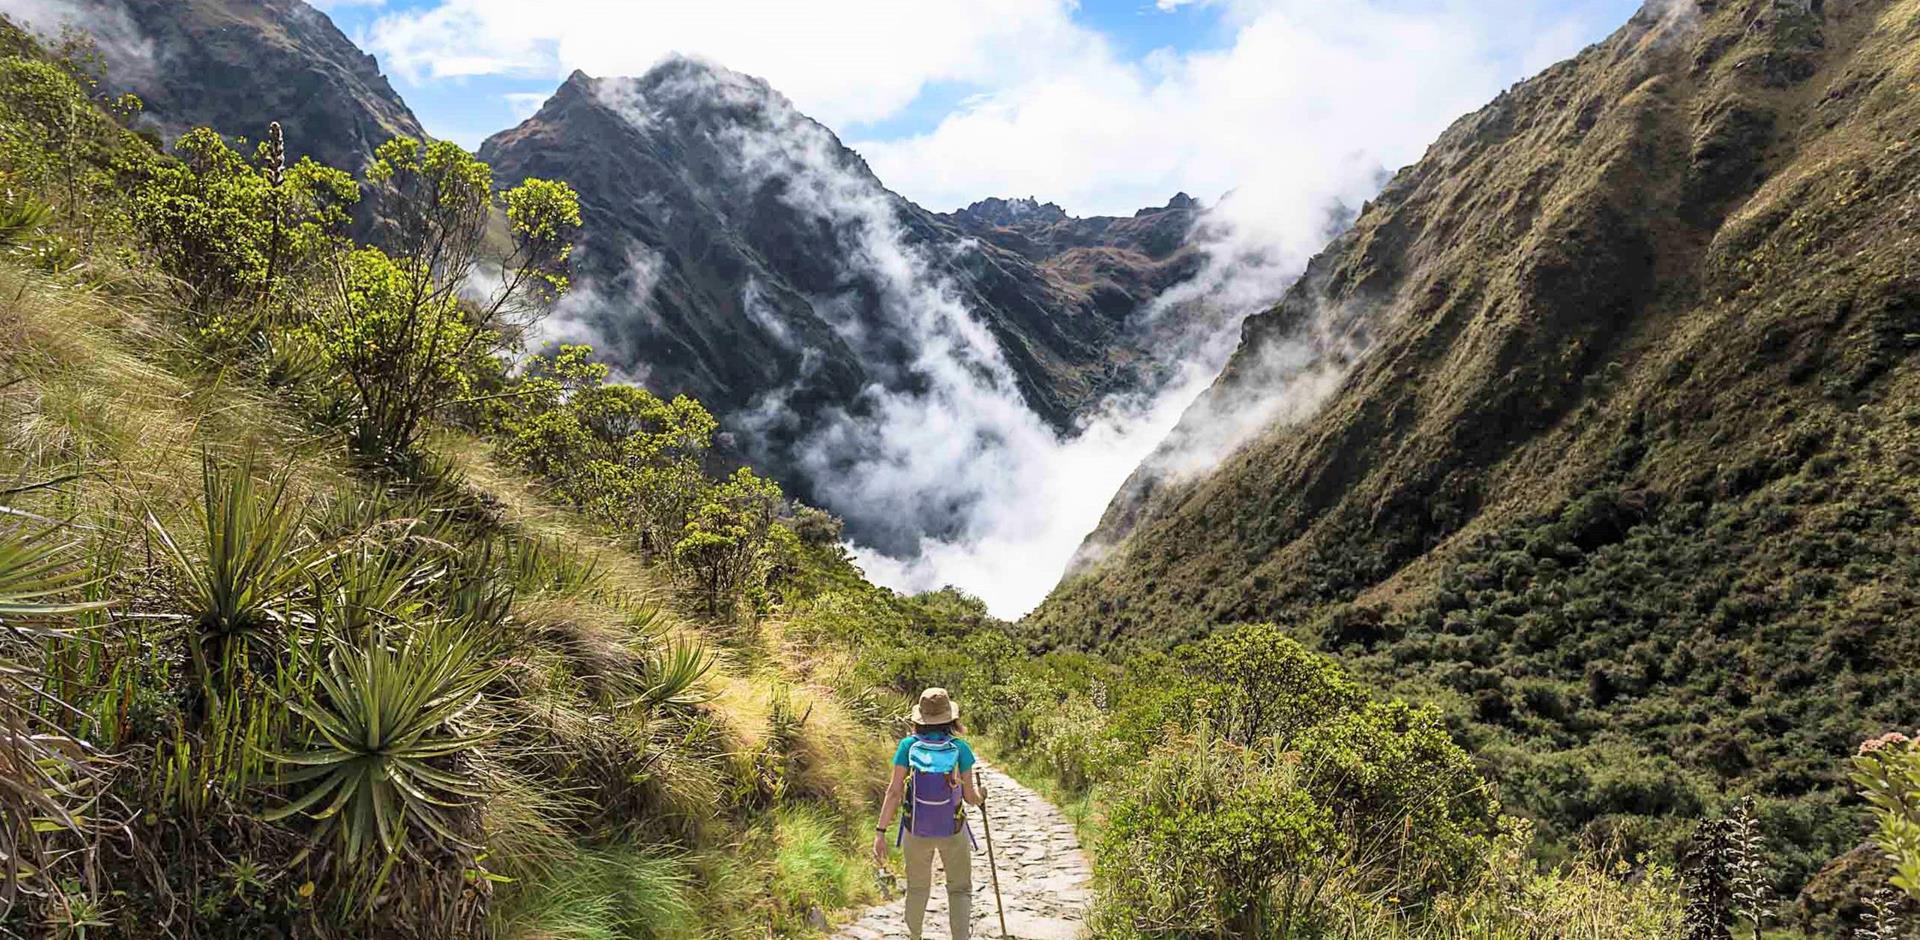 A&K itinerary, Peru, South America: The essential Inca Trail